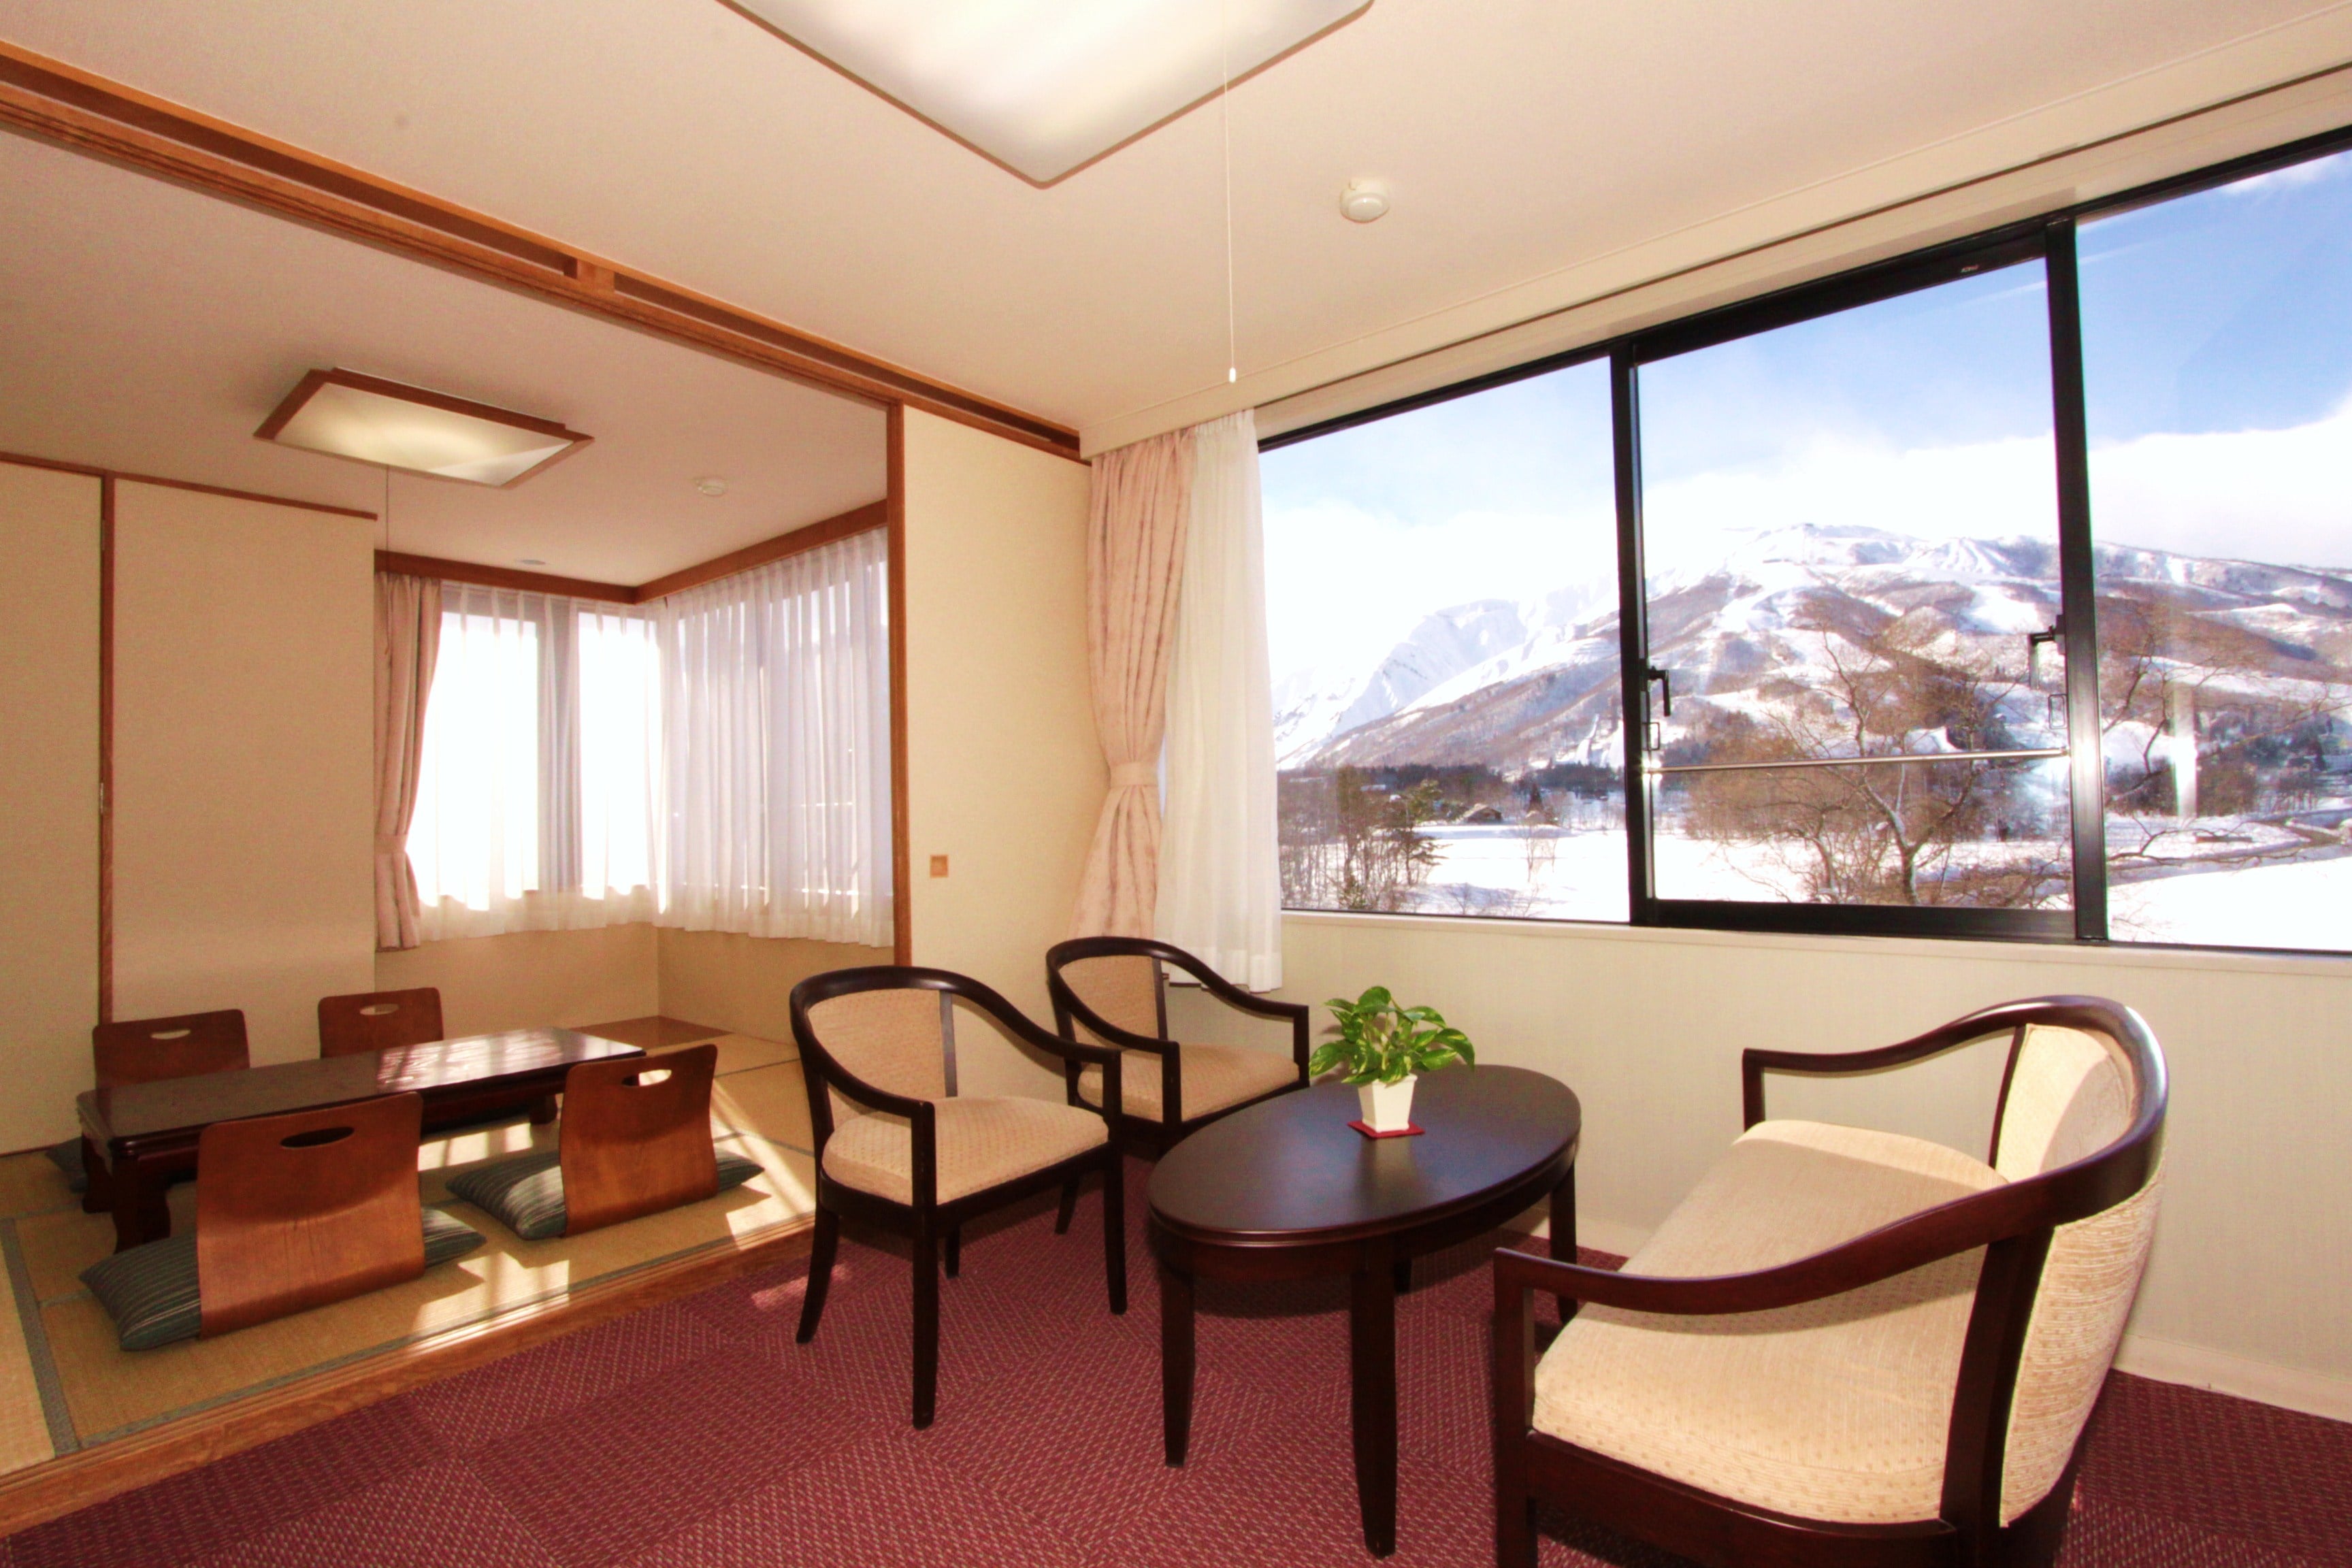 ห้องพักแบบครอบครัวสไตล์ญี่ปุ่นและตะวันตกพร้อมทิวทัศน์หิมะ